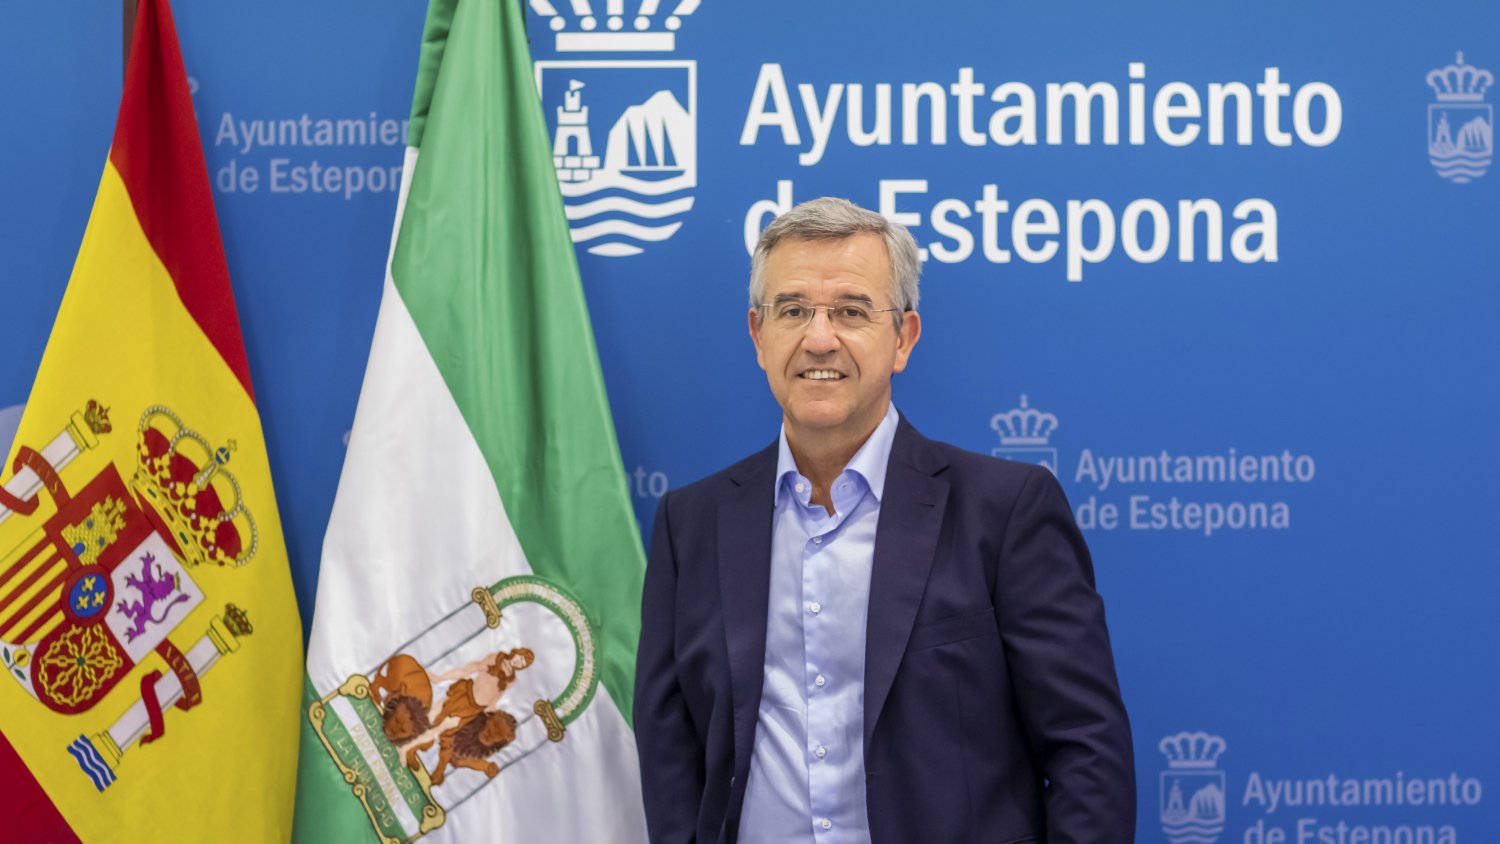 El alcalde de Estepona pide a la FEMP elaborar un informe sobre el impacto de la inflación en los ayuntamientos